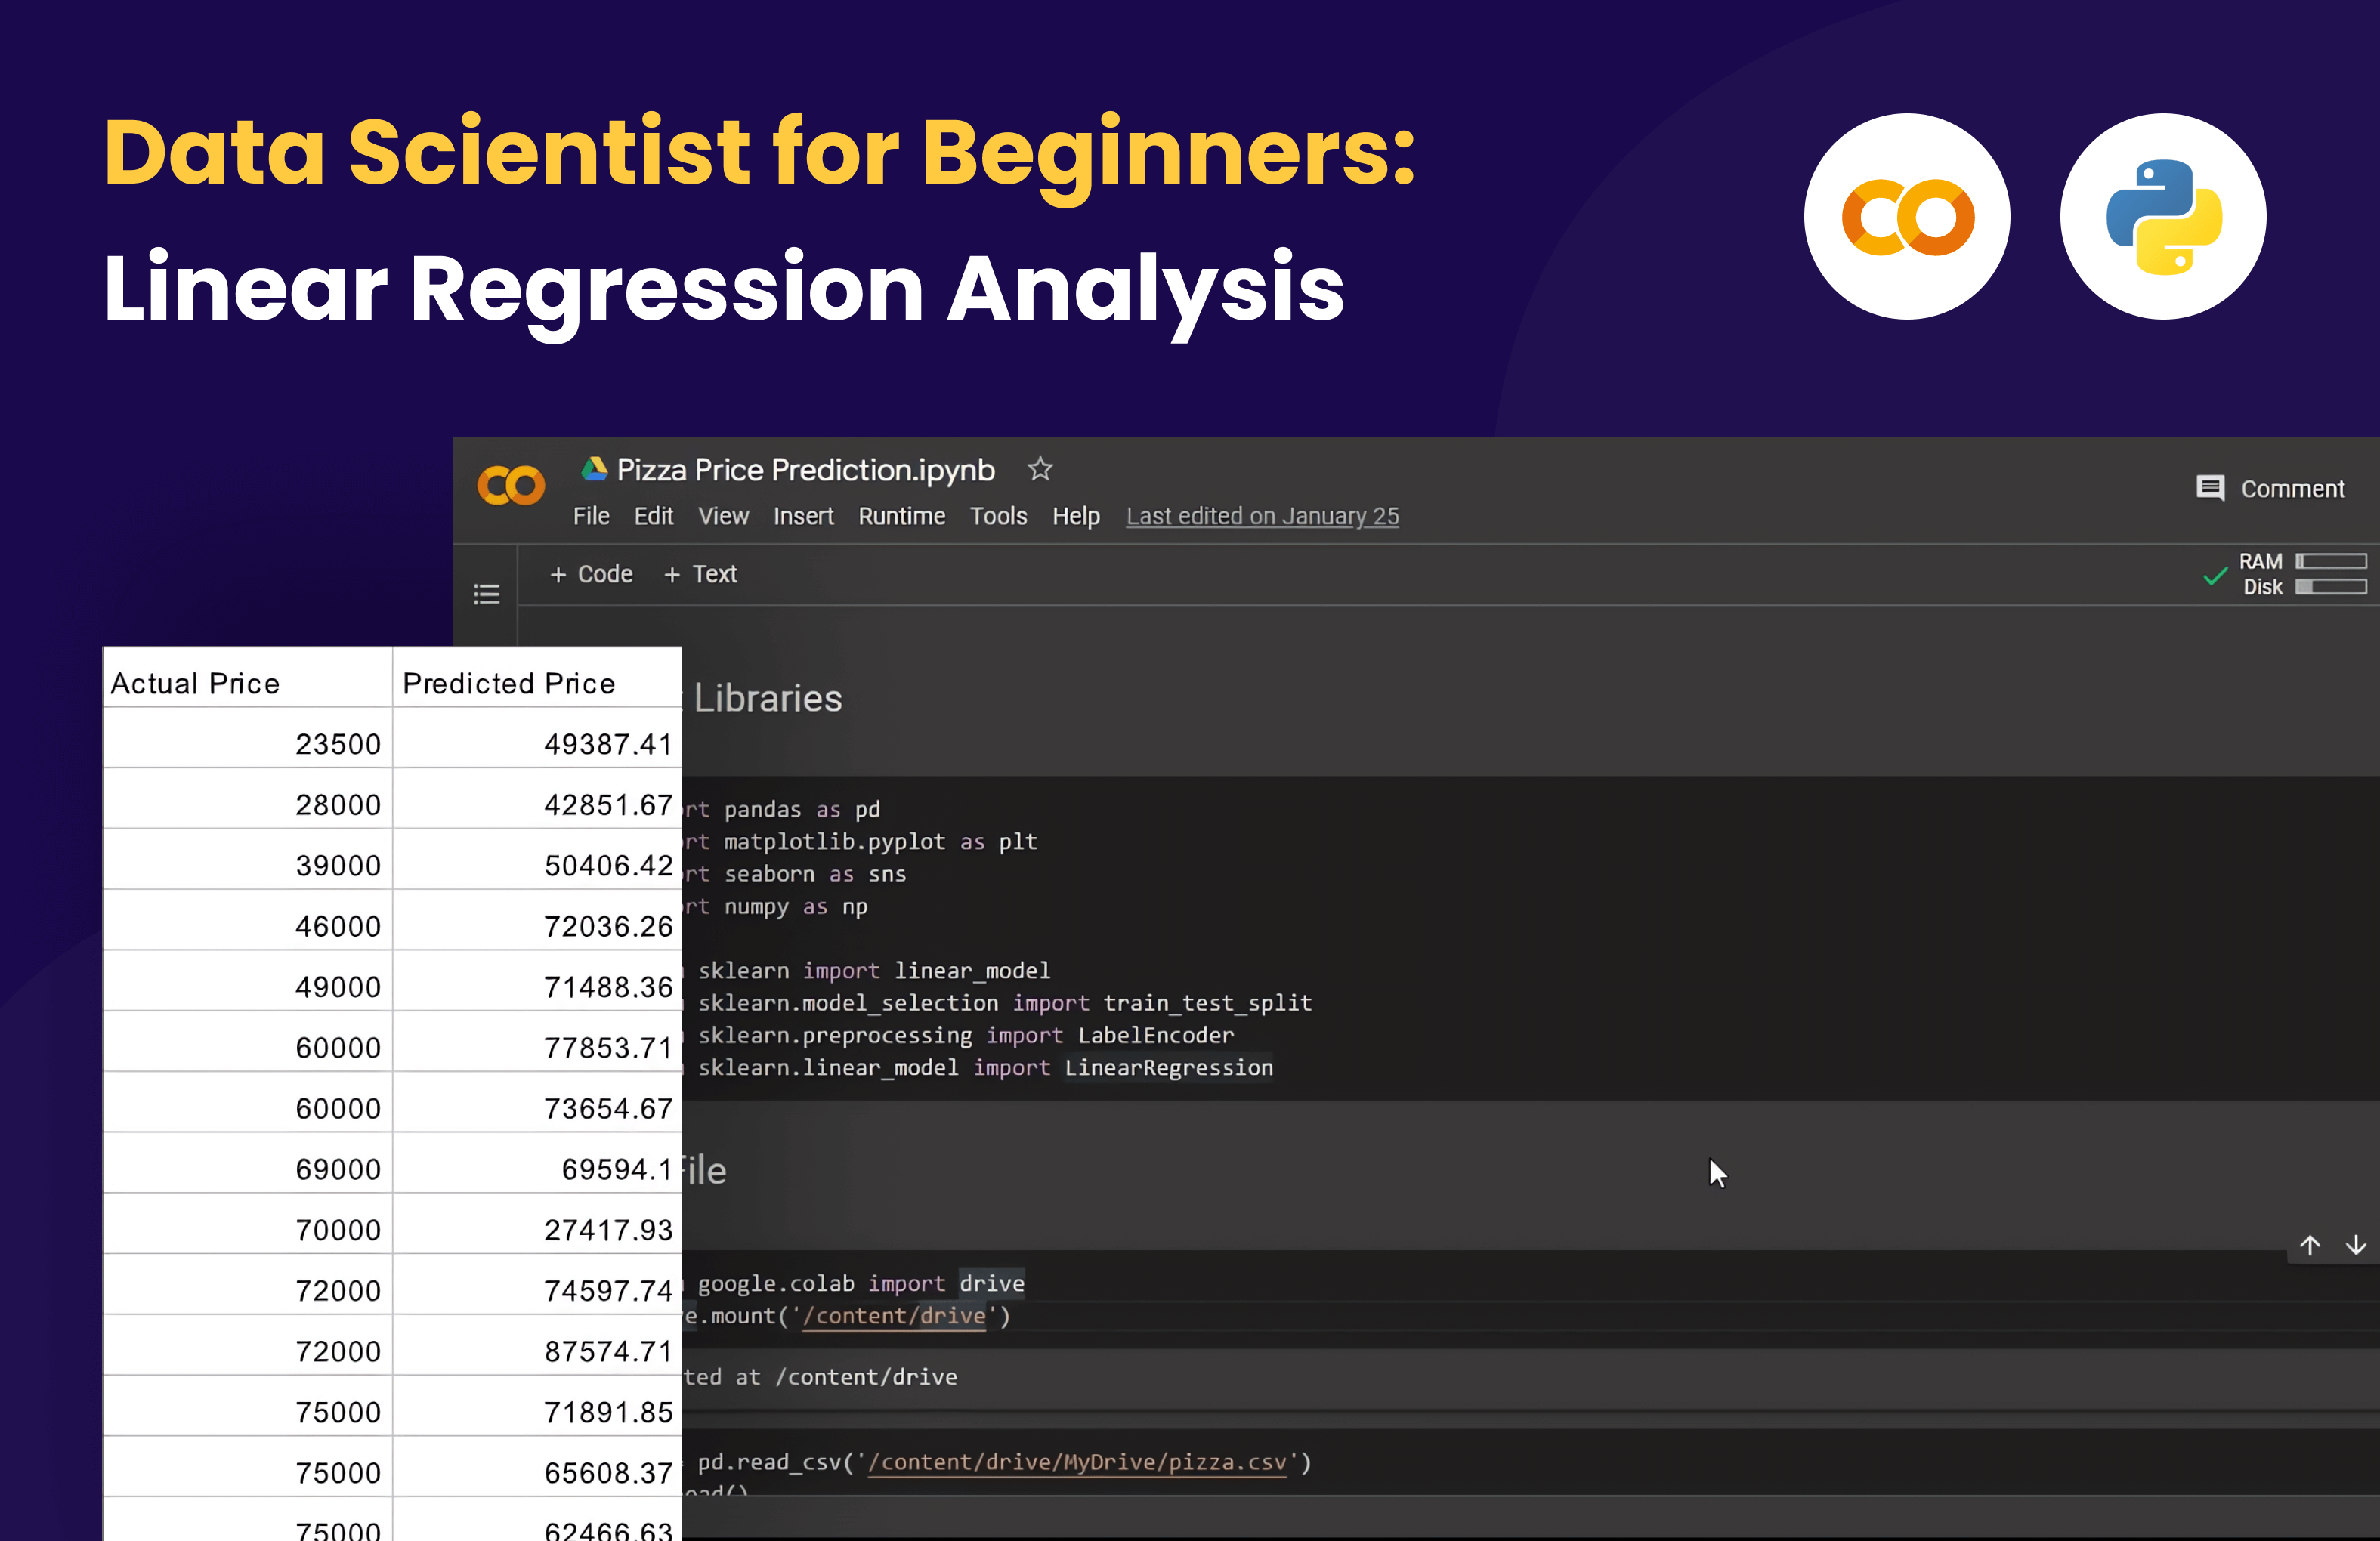 Kelas Data Scientist for Beginners: Linear Regression Analysis di BuildWithAngga